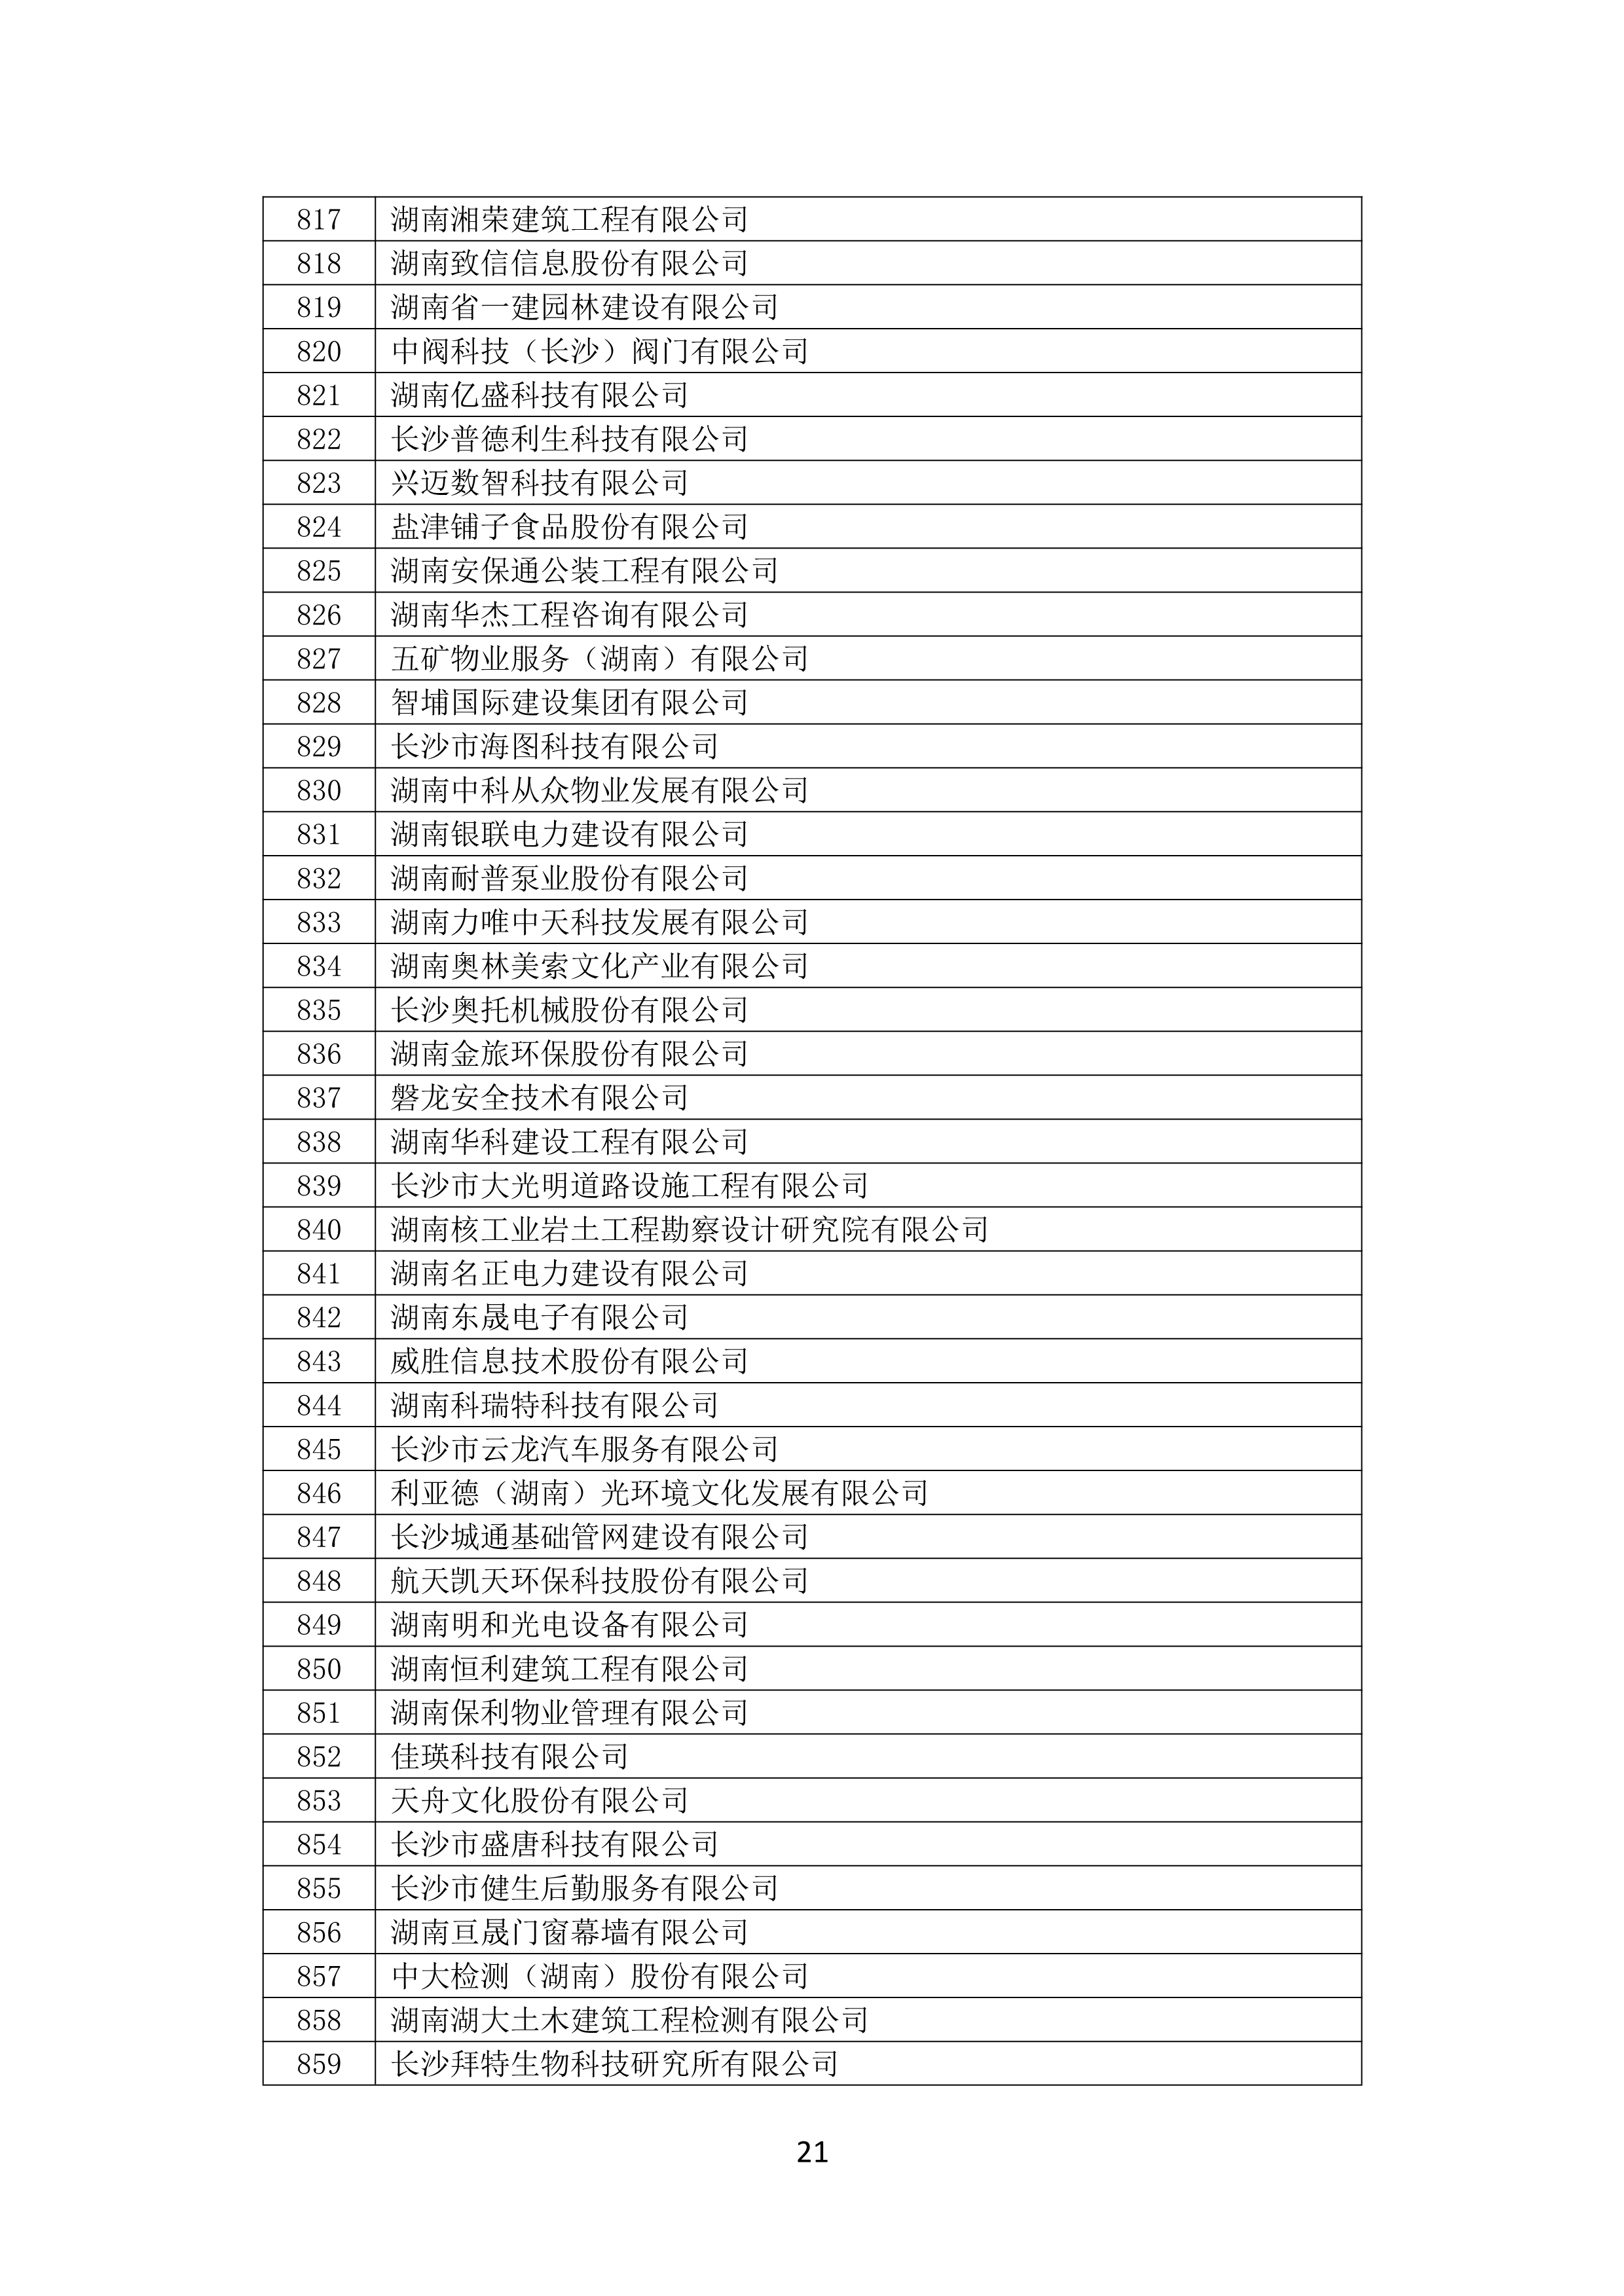 2021 年(nián)度湖南省守合同重信用企業名單_22.png